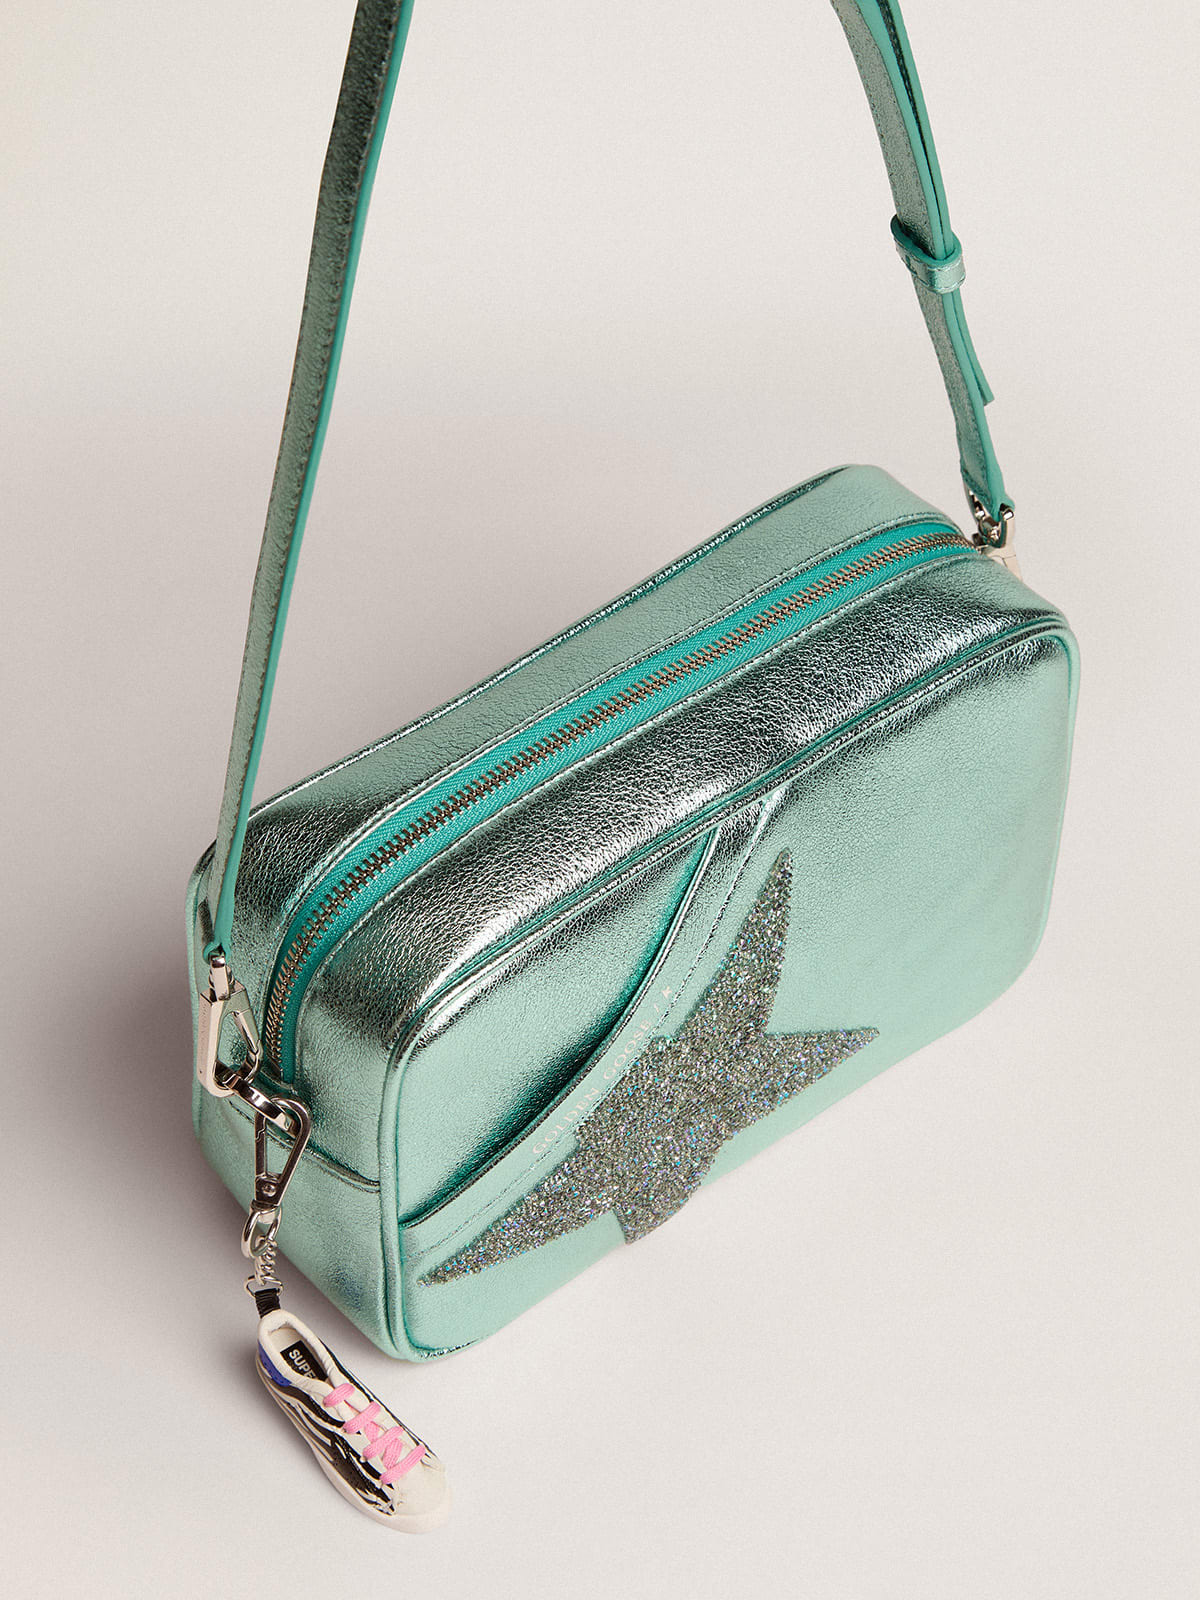 Golden Goose - Sac Star Bag en cuir lamé turquoise avec étoile en cristaux Swarovski in 